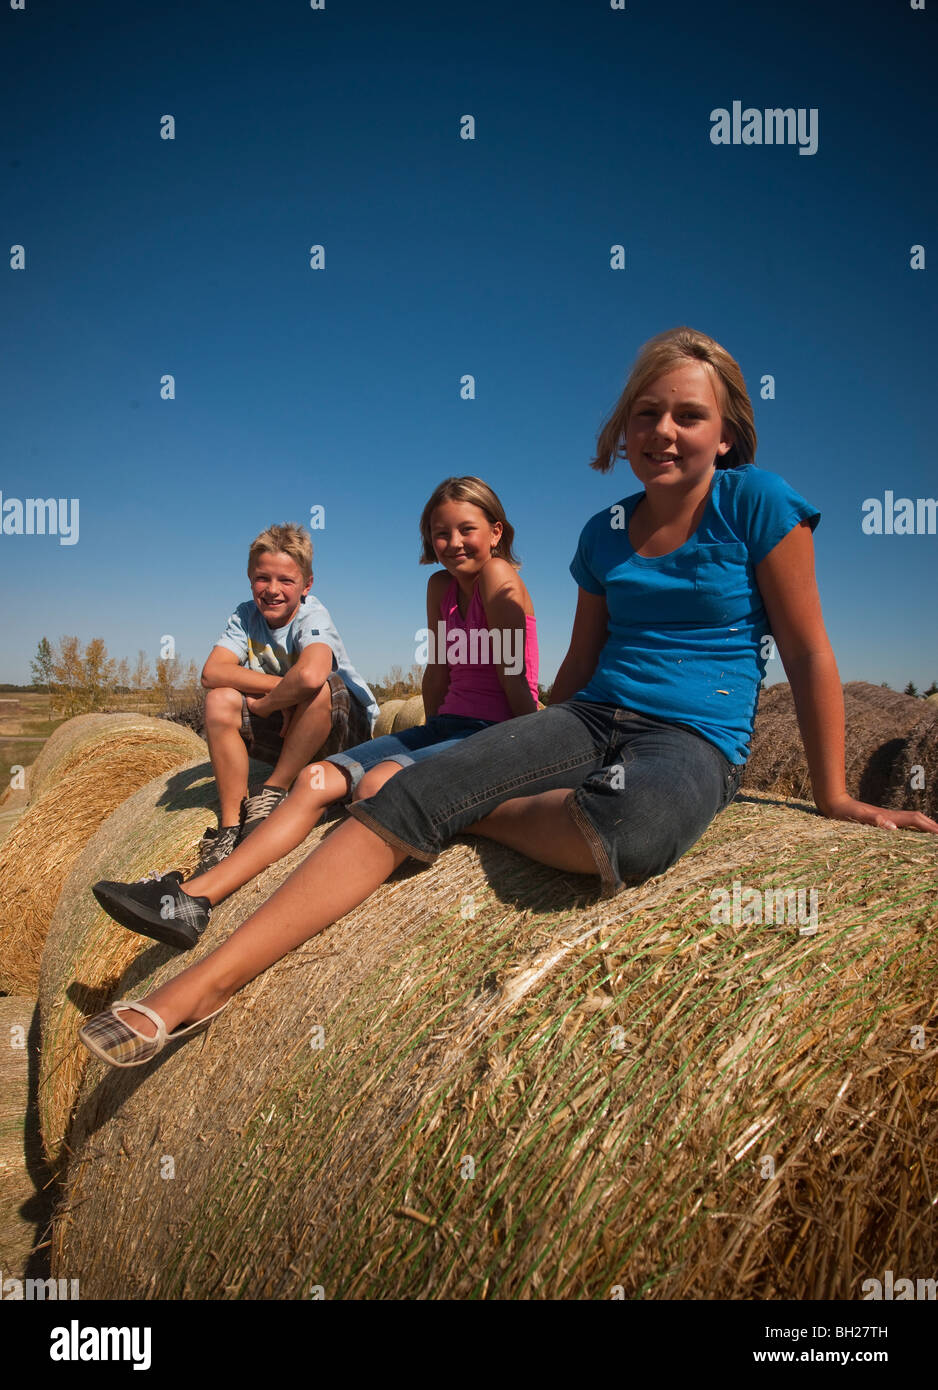 Junge (12) Mädchen (10) und Mädchen (12) sitzt auf Strohballen; Redvers, Saskatchewan, Kanada Stockfoto